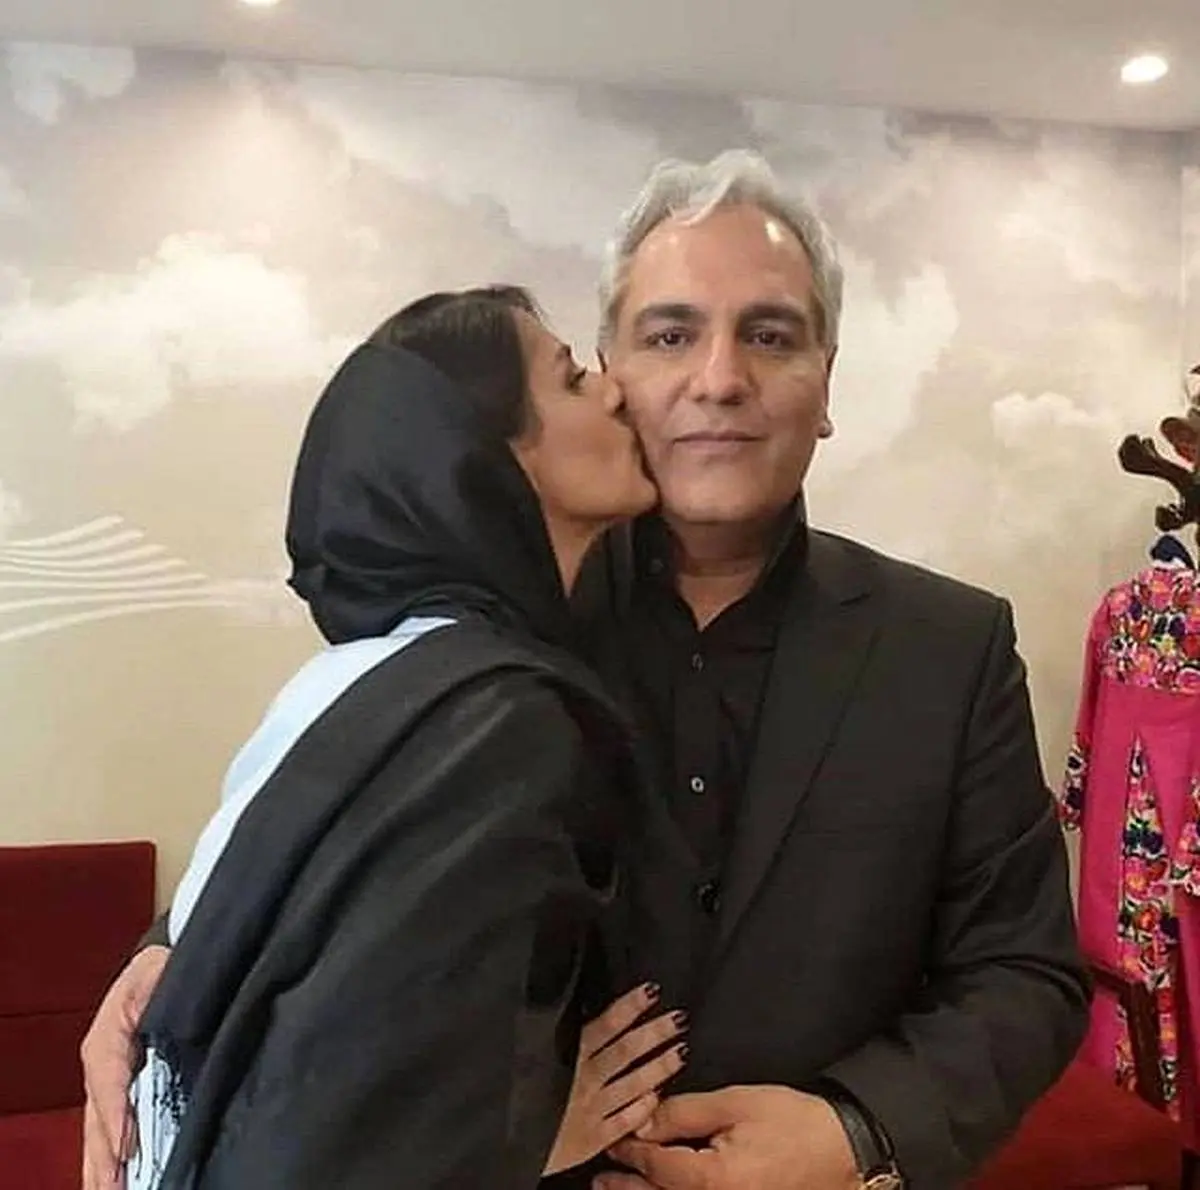 عکس لورفته بازیگر زن ایرانی در کنار مهران مدیری + تصاویر جنجالی و بیوگرافی